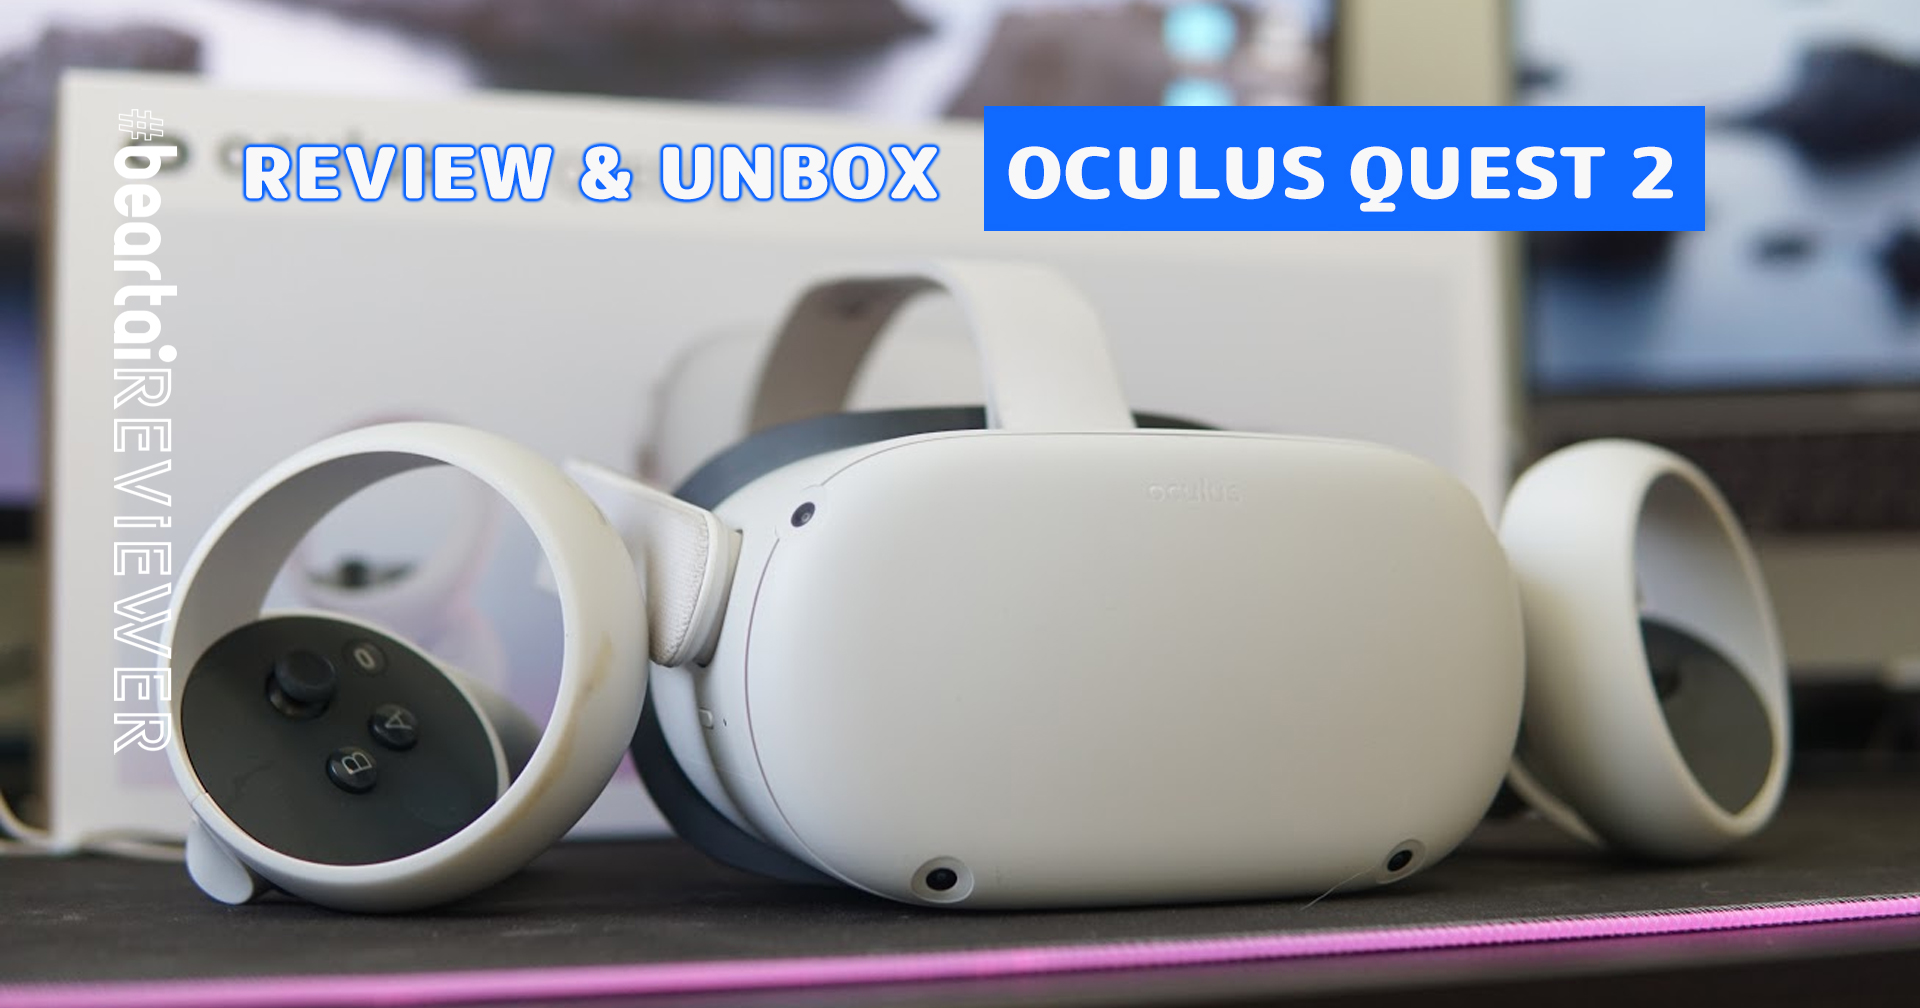 รีวิว & แกะกล่อง Oculus Quest 2 แว่น VR ไม่ต้องต่อคอม รุ่นที่ 2 แรงขึ้น ชัดขึ้น เจ๋งขึ้น!